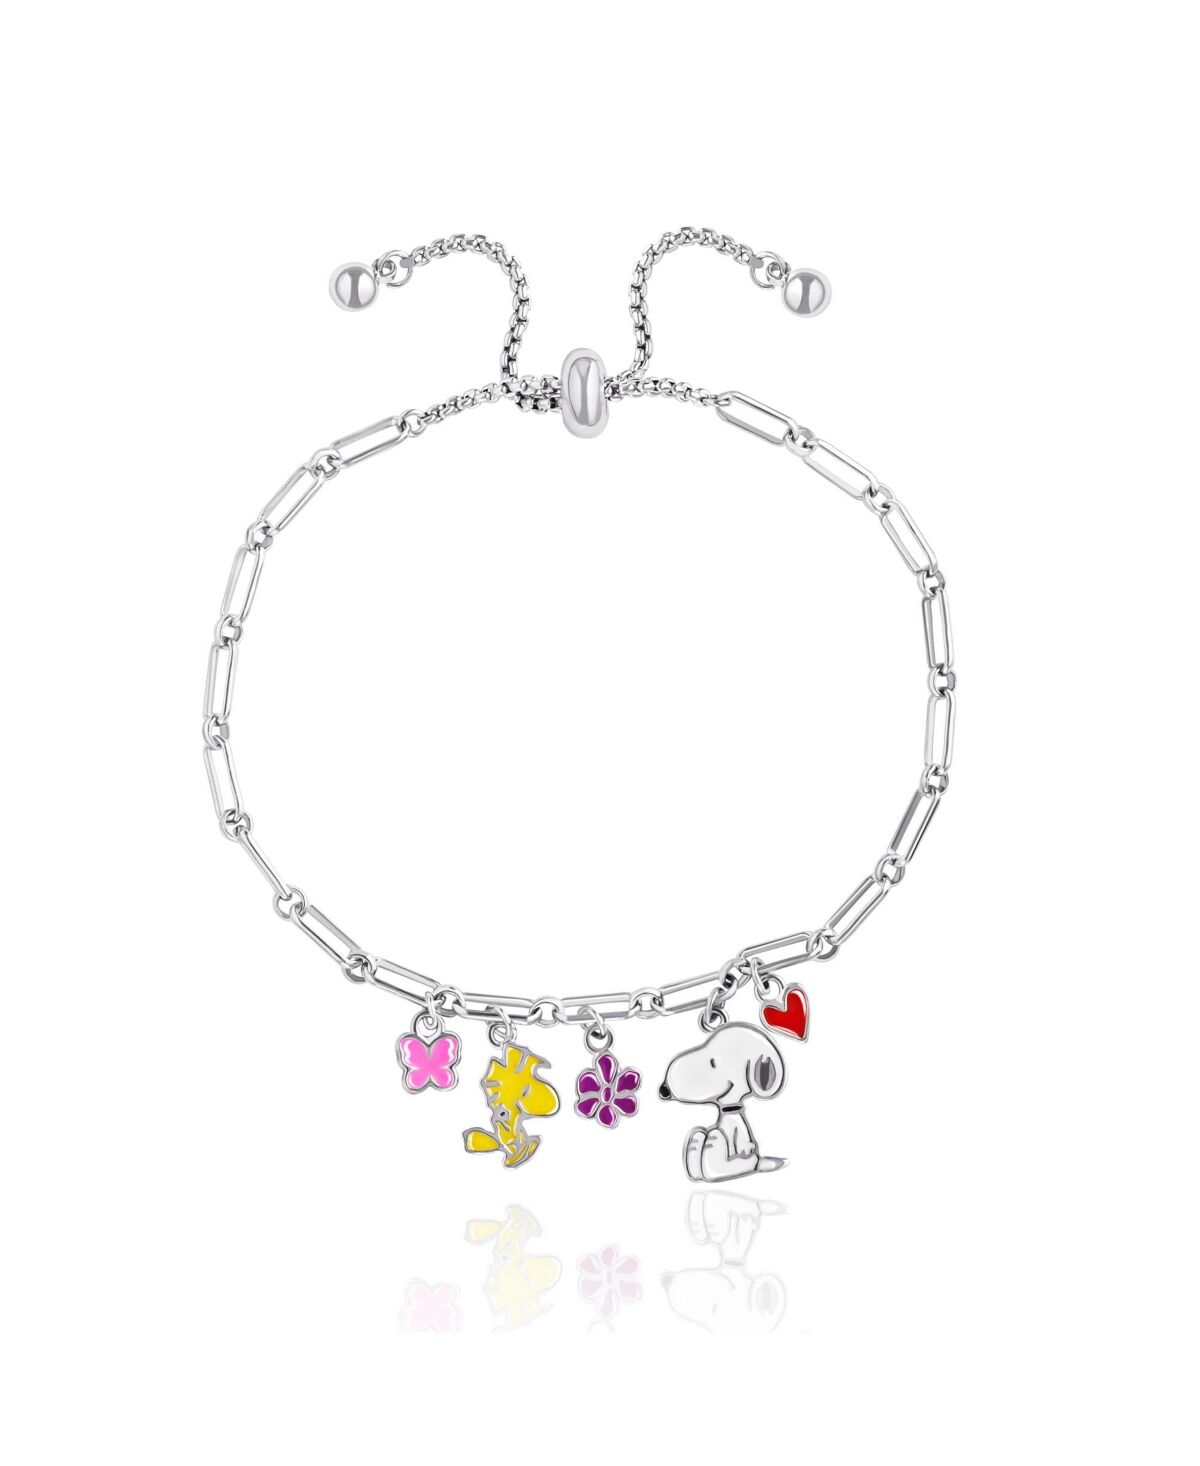 Peanuts Snoopy Enamel Charm Woodstock, Flowers, Heart Lariat Paper Clip Chain Bracelet - Silver